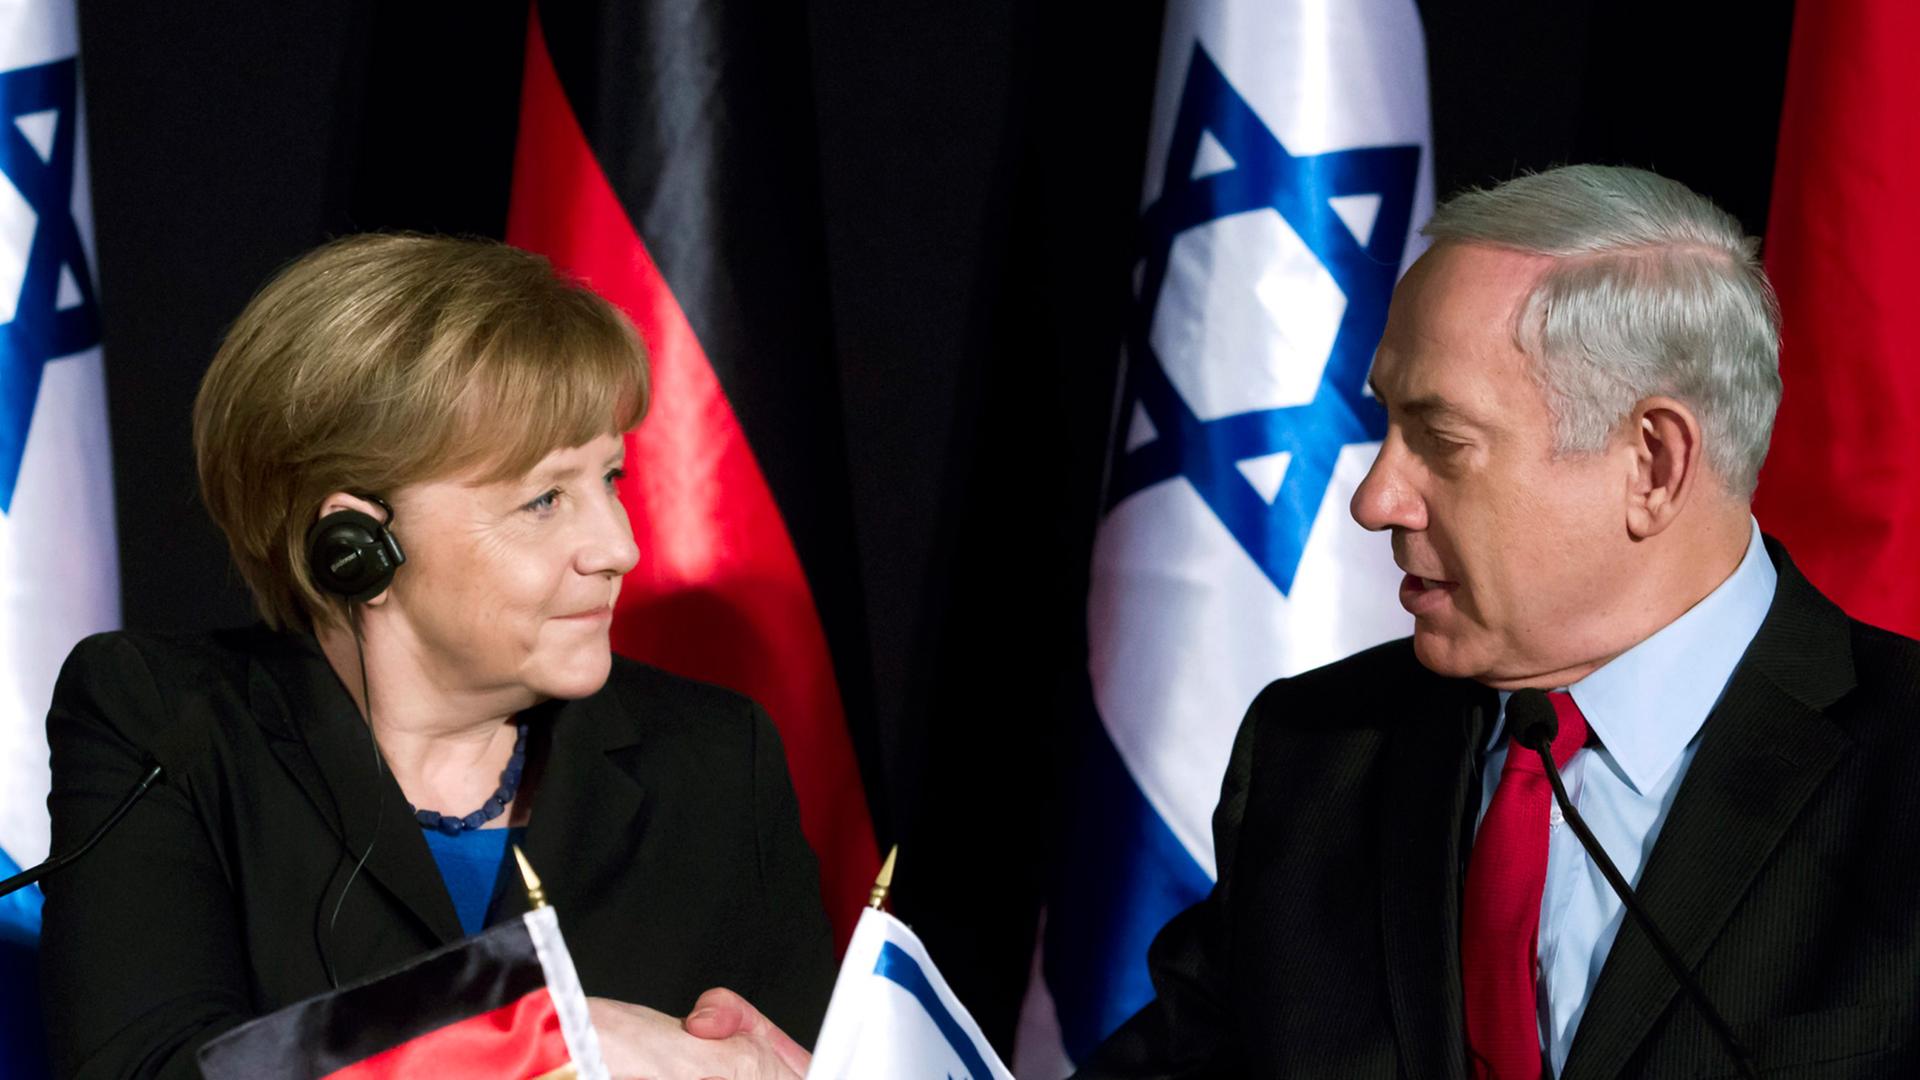 Bundeskanzlerin Angela Merkel und Benjamin Netanjahu schütteln die Hand.